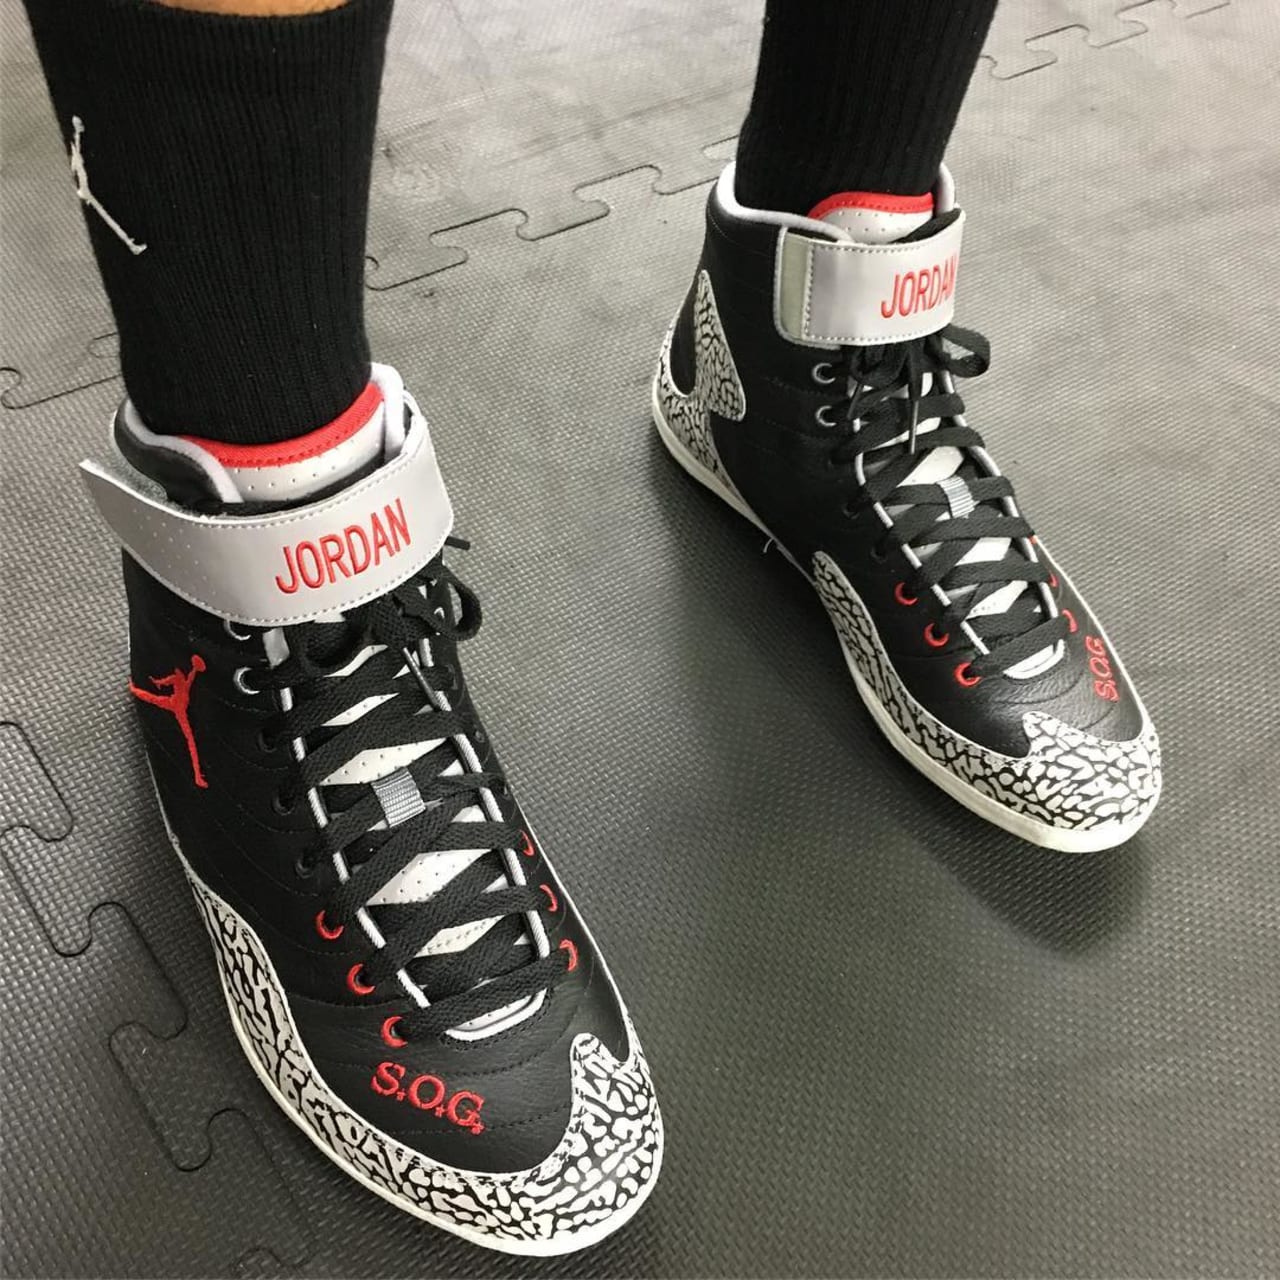 jordan sog off court shoes